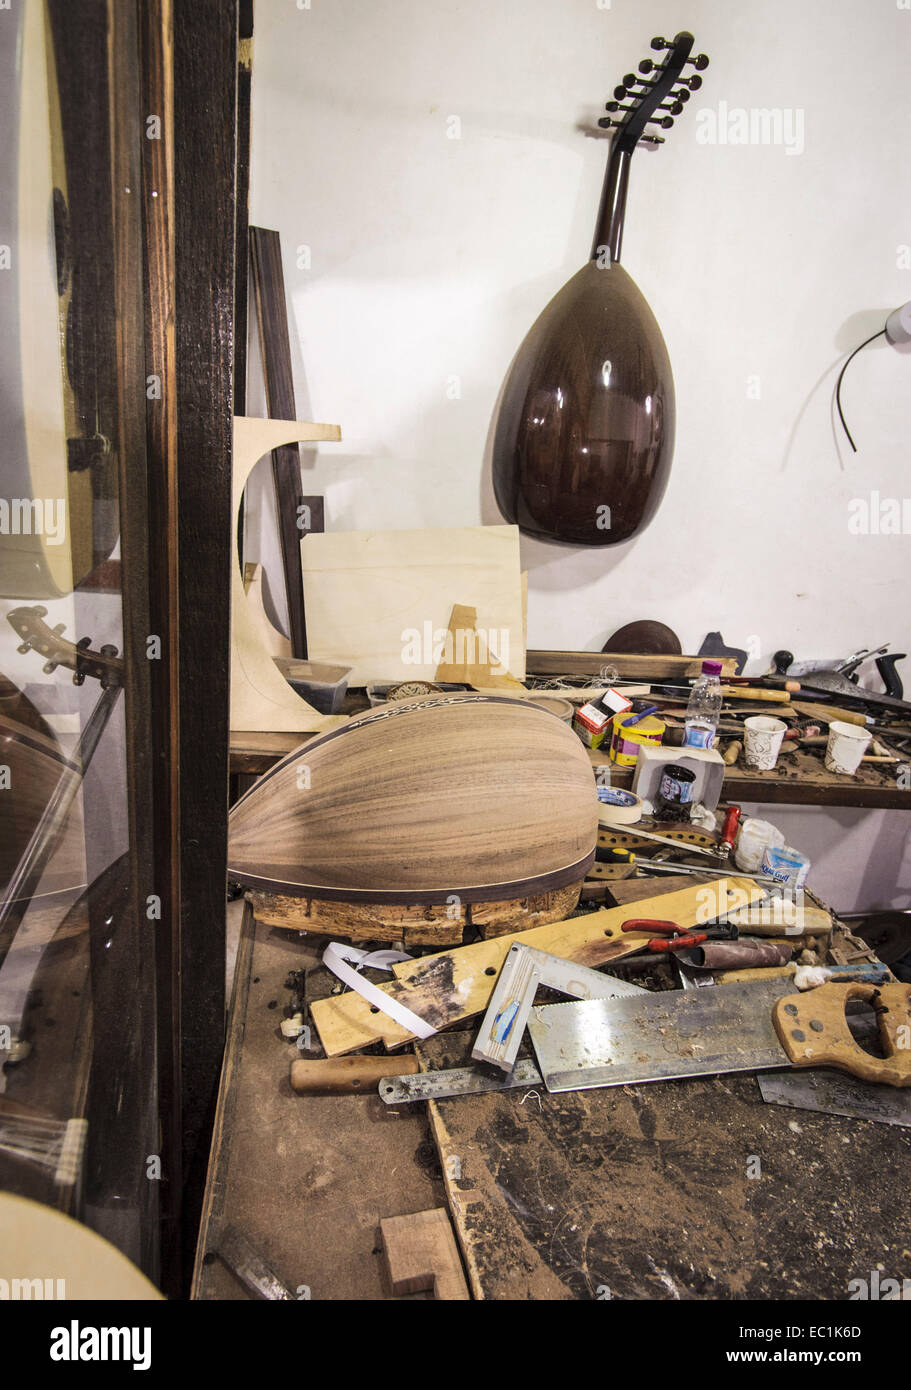 Ouds in Bau in Katar Maker Workshop. Mit aufwendigen und kunstvollen Holzarbeiten Entwürfe der Mandoline geformten Rücken. Stockfoto